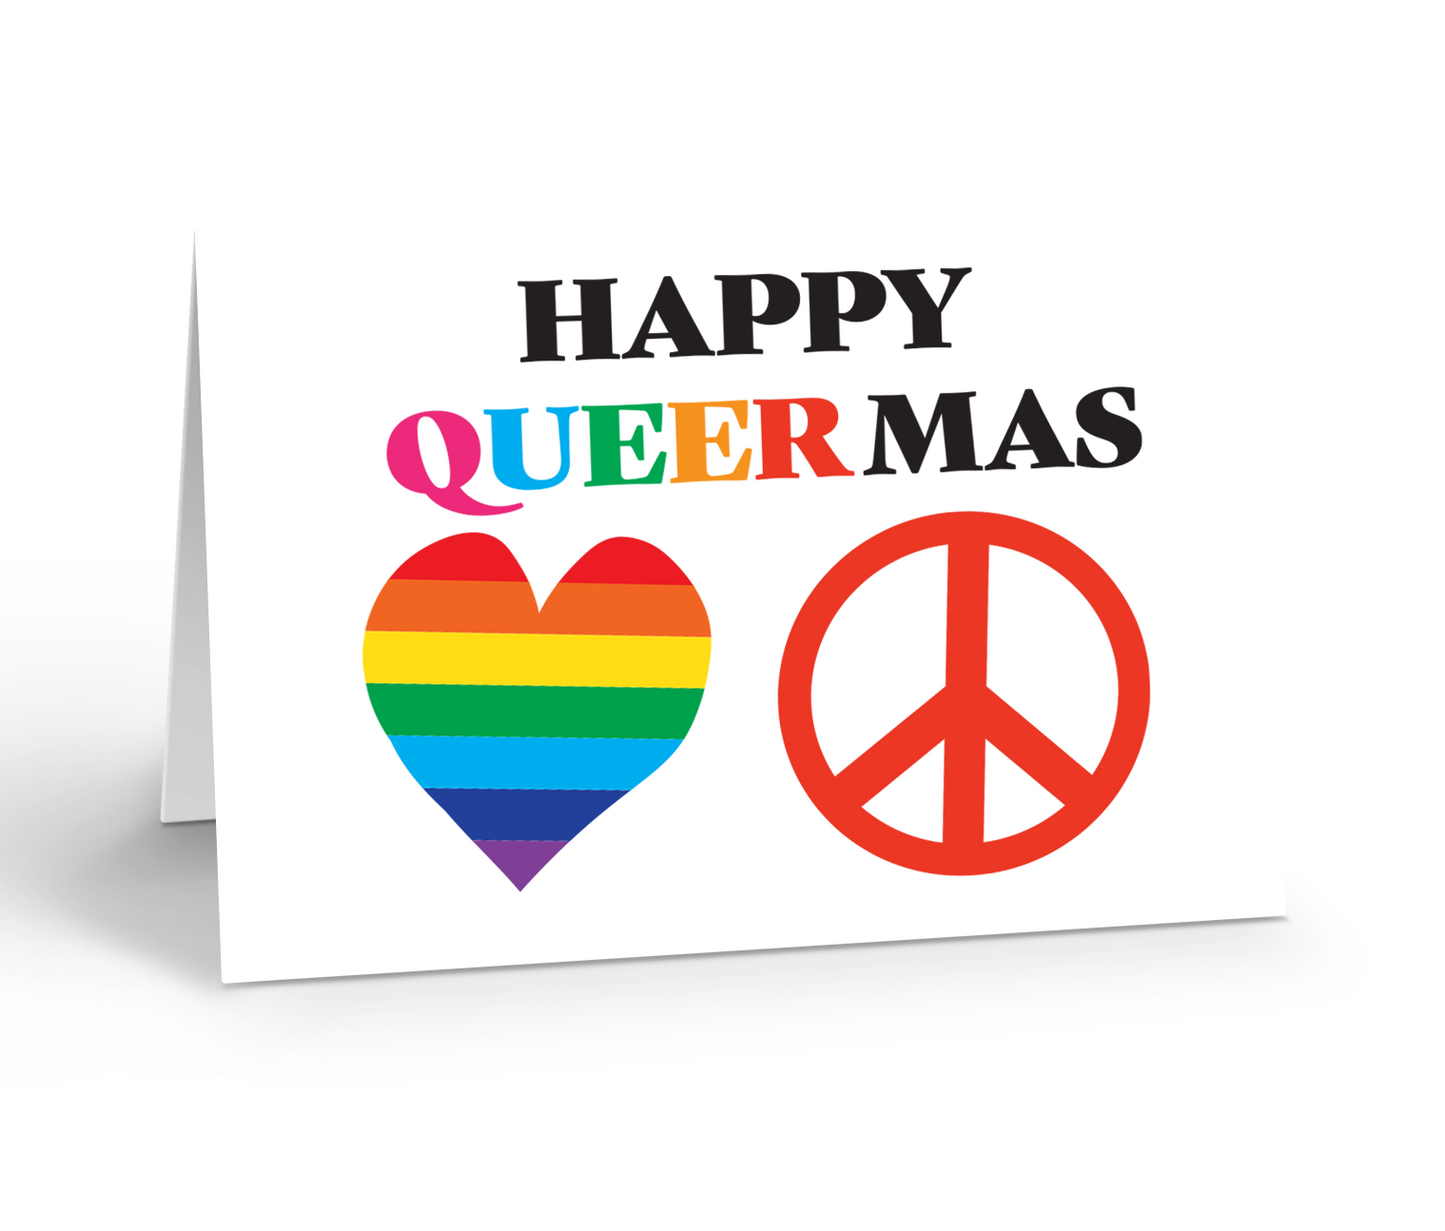 Happy queermas greeting card 